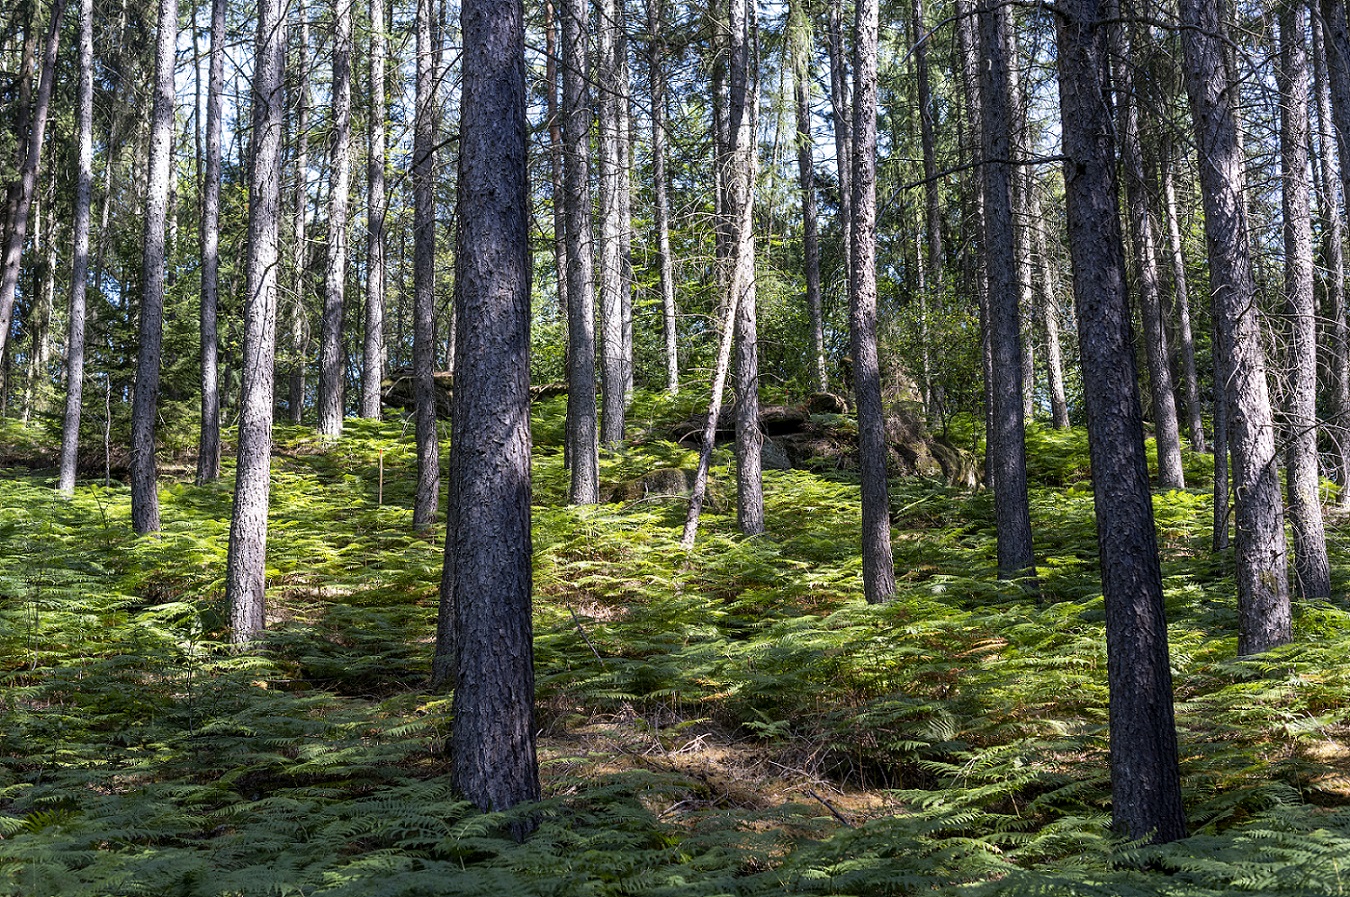 Paysage d'arbres dans la forêt. Le sol de la forêt est couvert de fougères.